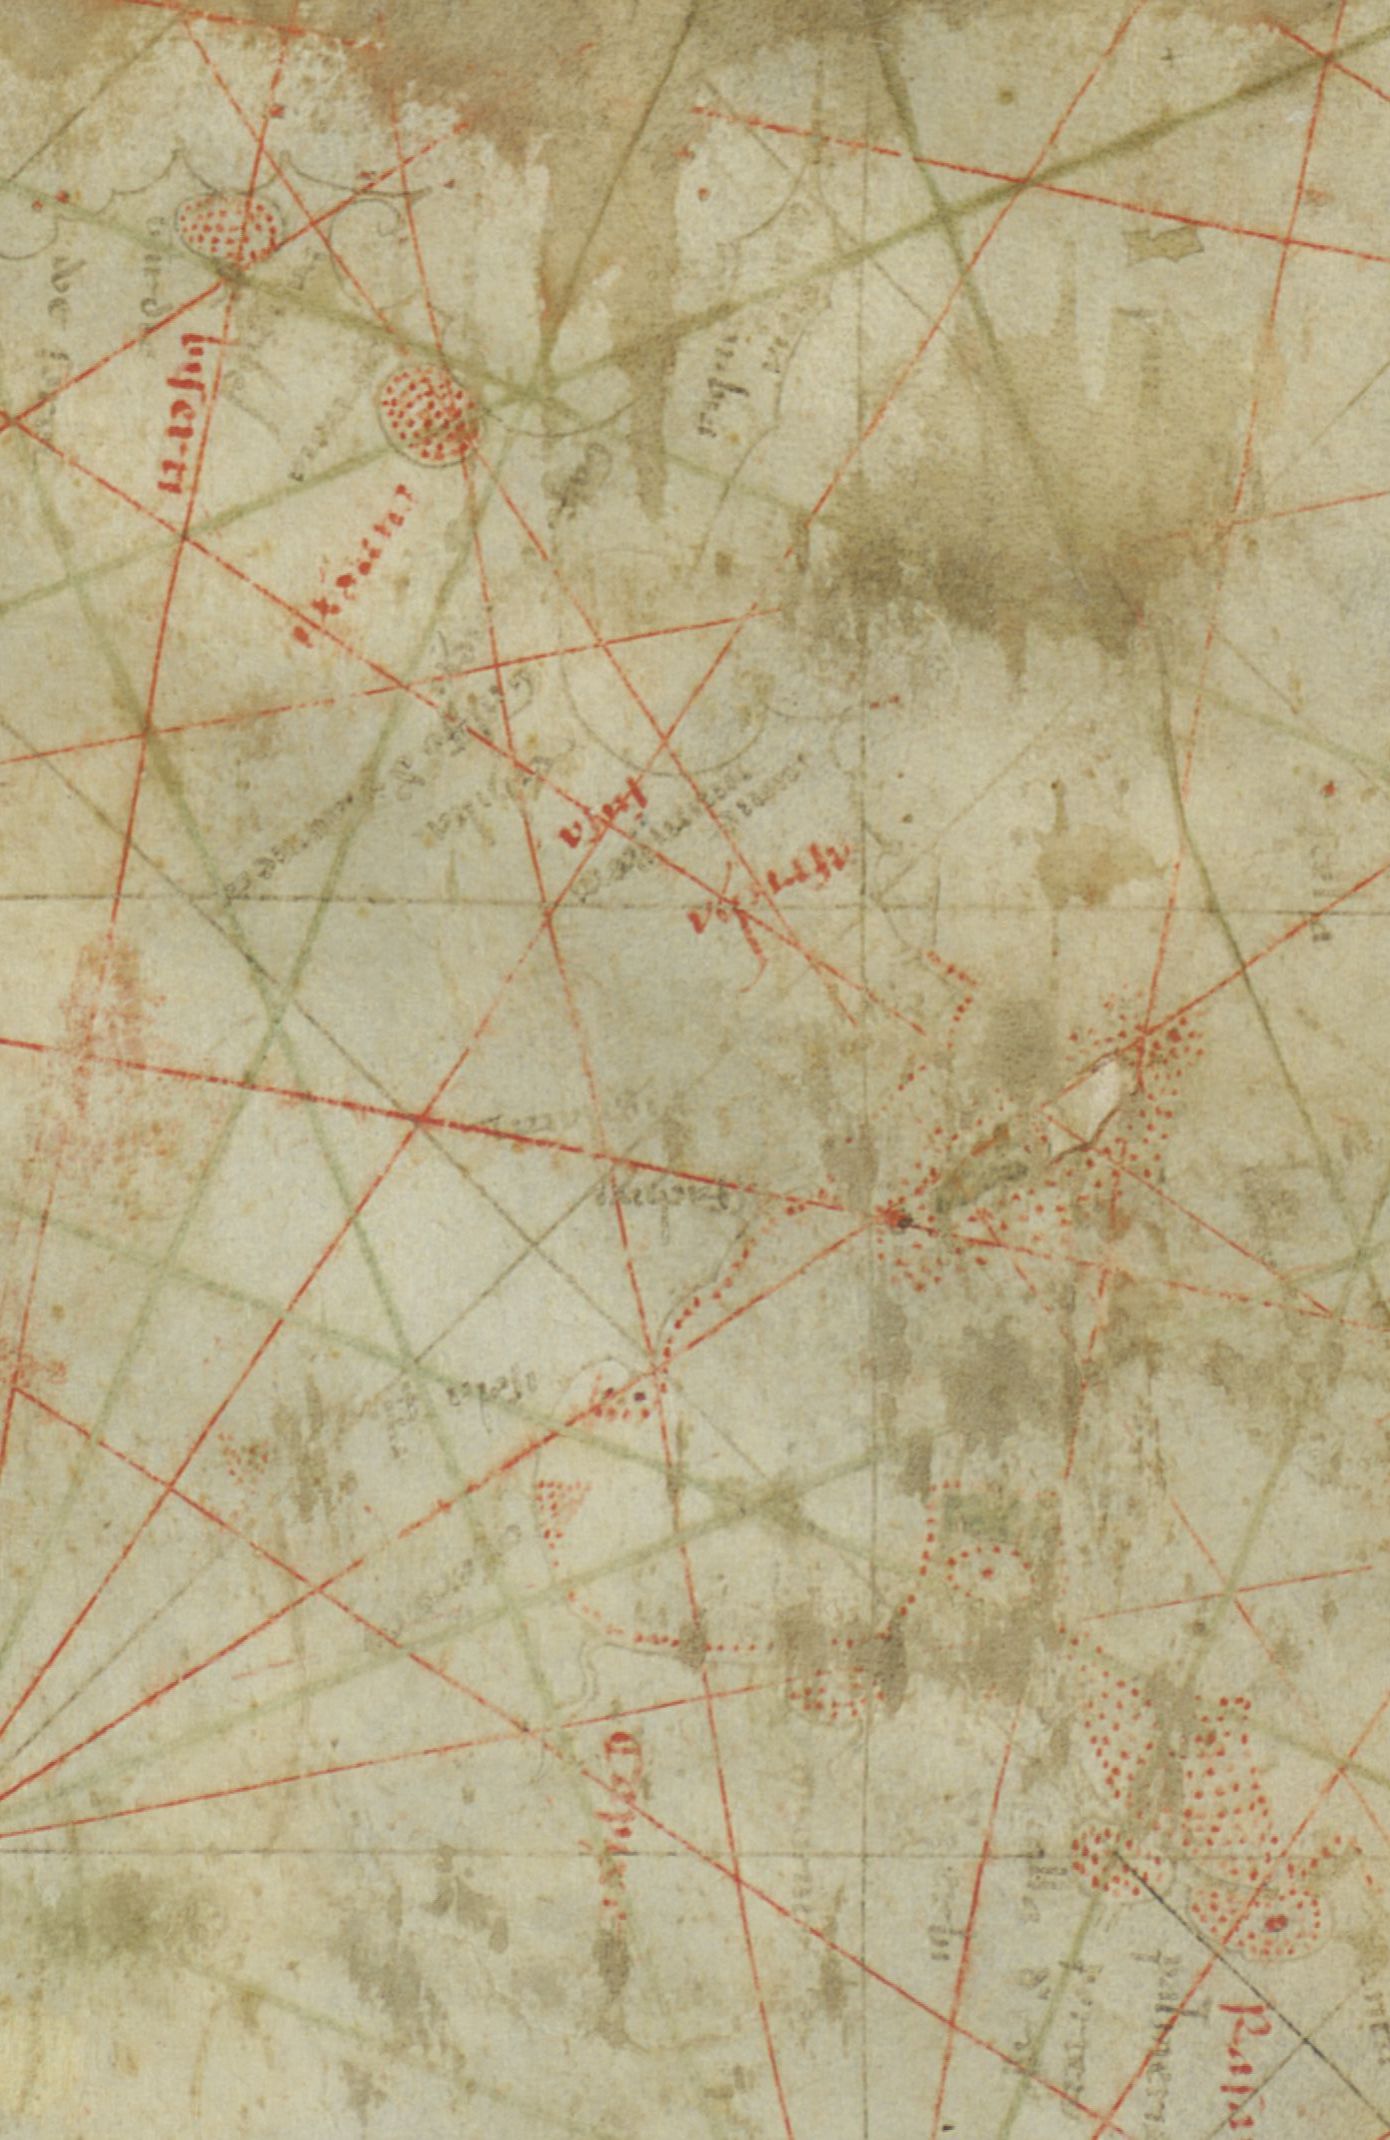 La carte de Vesconte, 1313